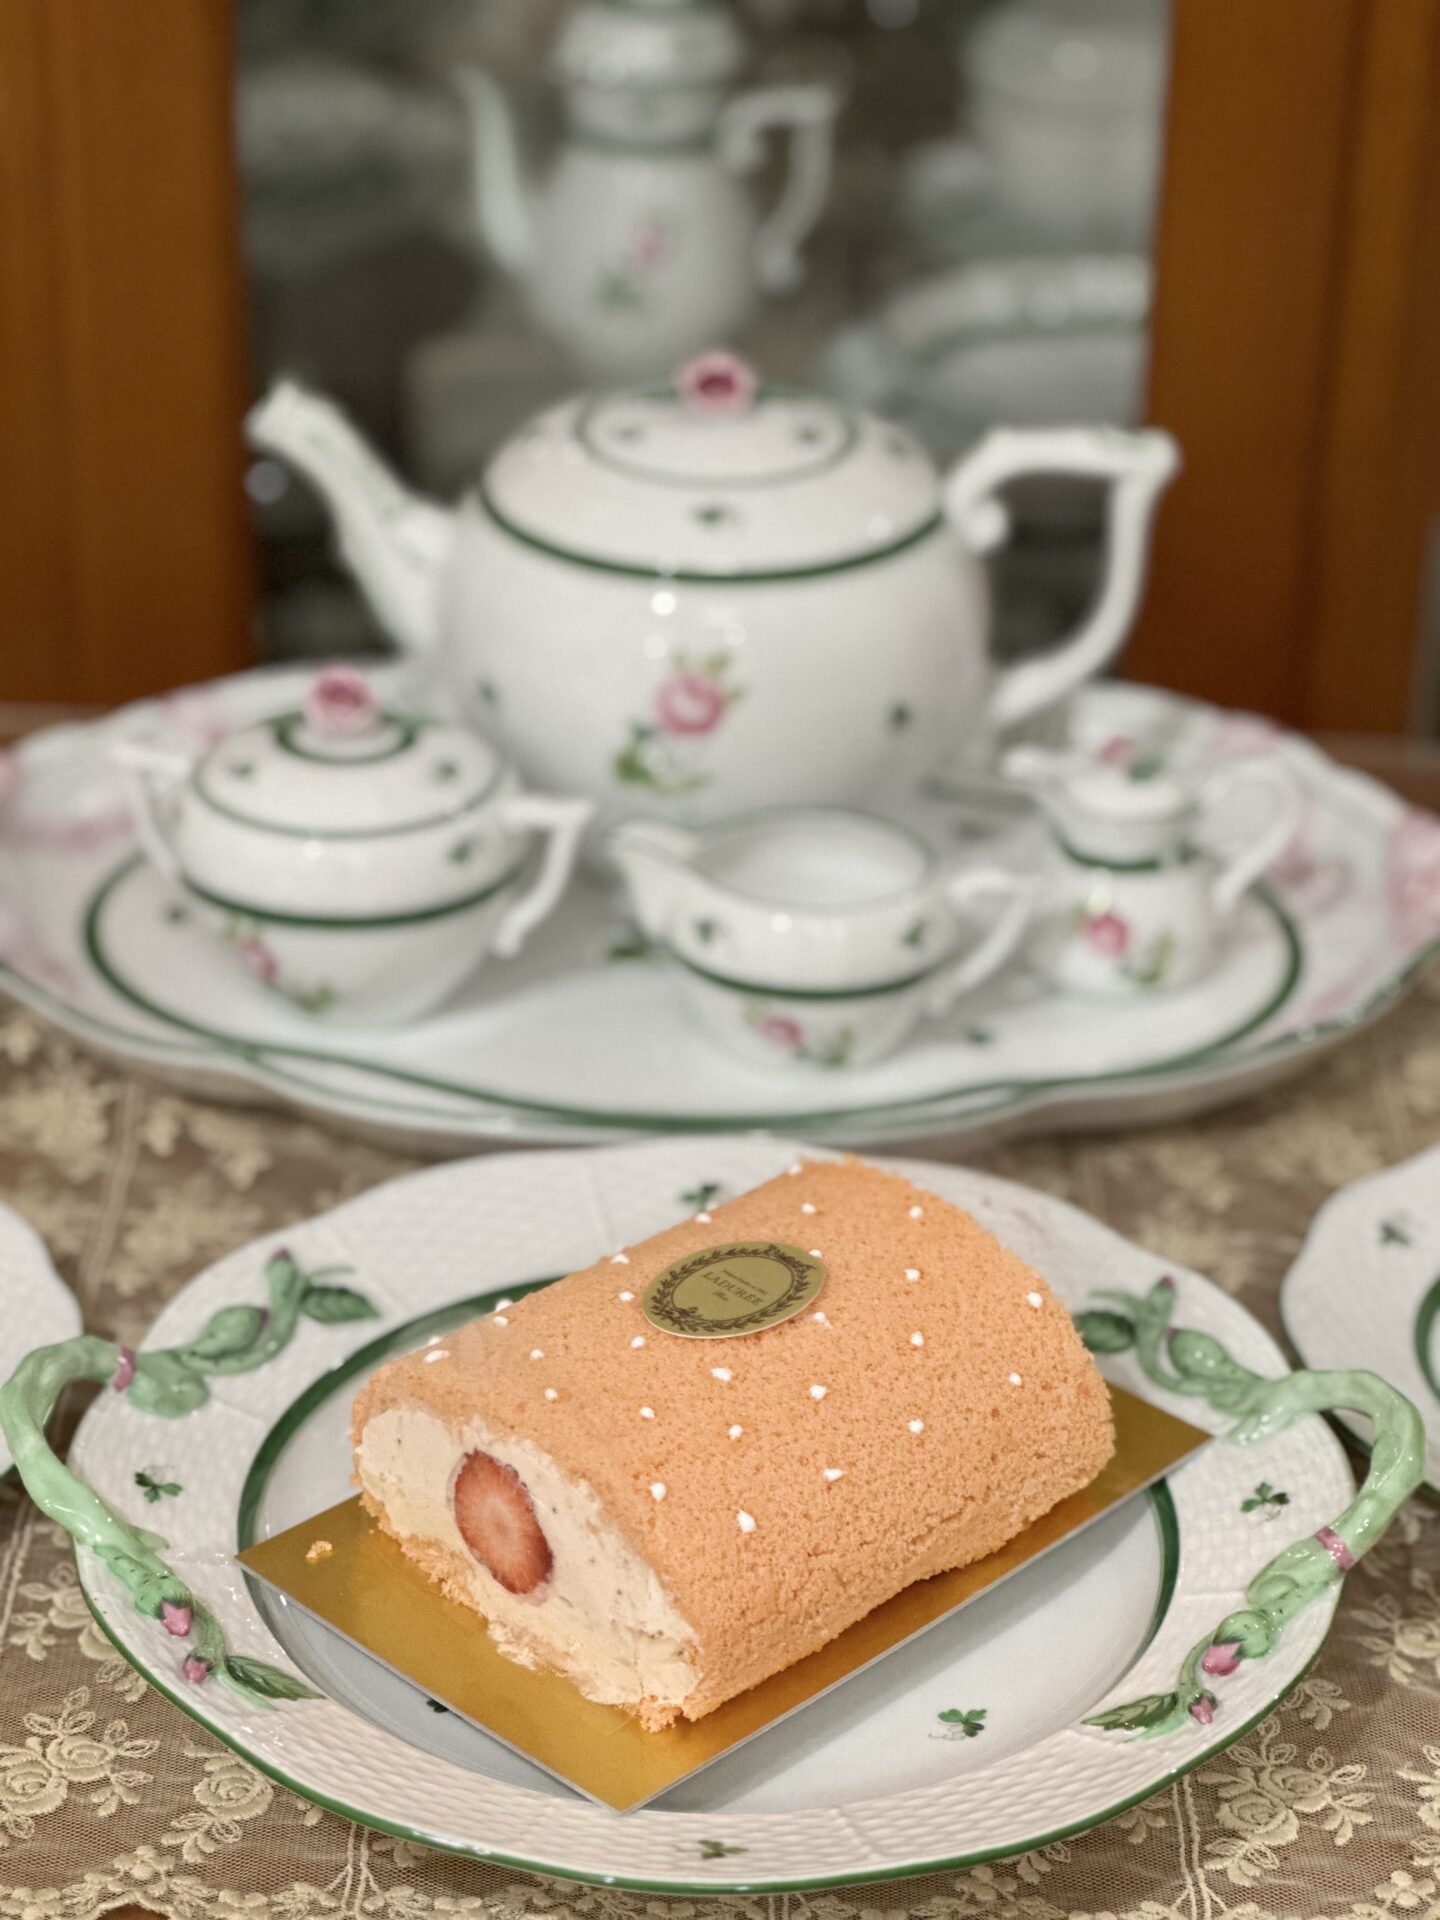 ラデュレ 渋谷松濤店 限定 ロールケーキ☆ロールケーク ローズ・エ・フレーズ☆ふんわりロールケーキにふわふわローズとイチゴのムースがおいしすぎる♡